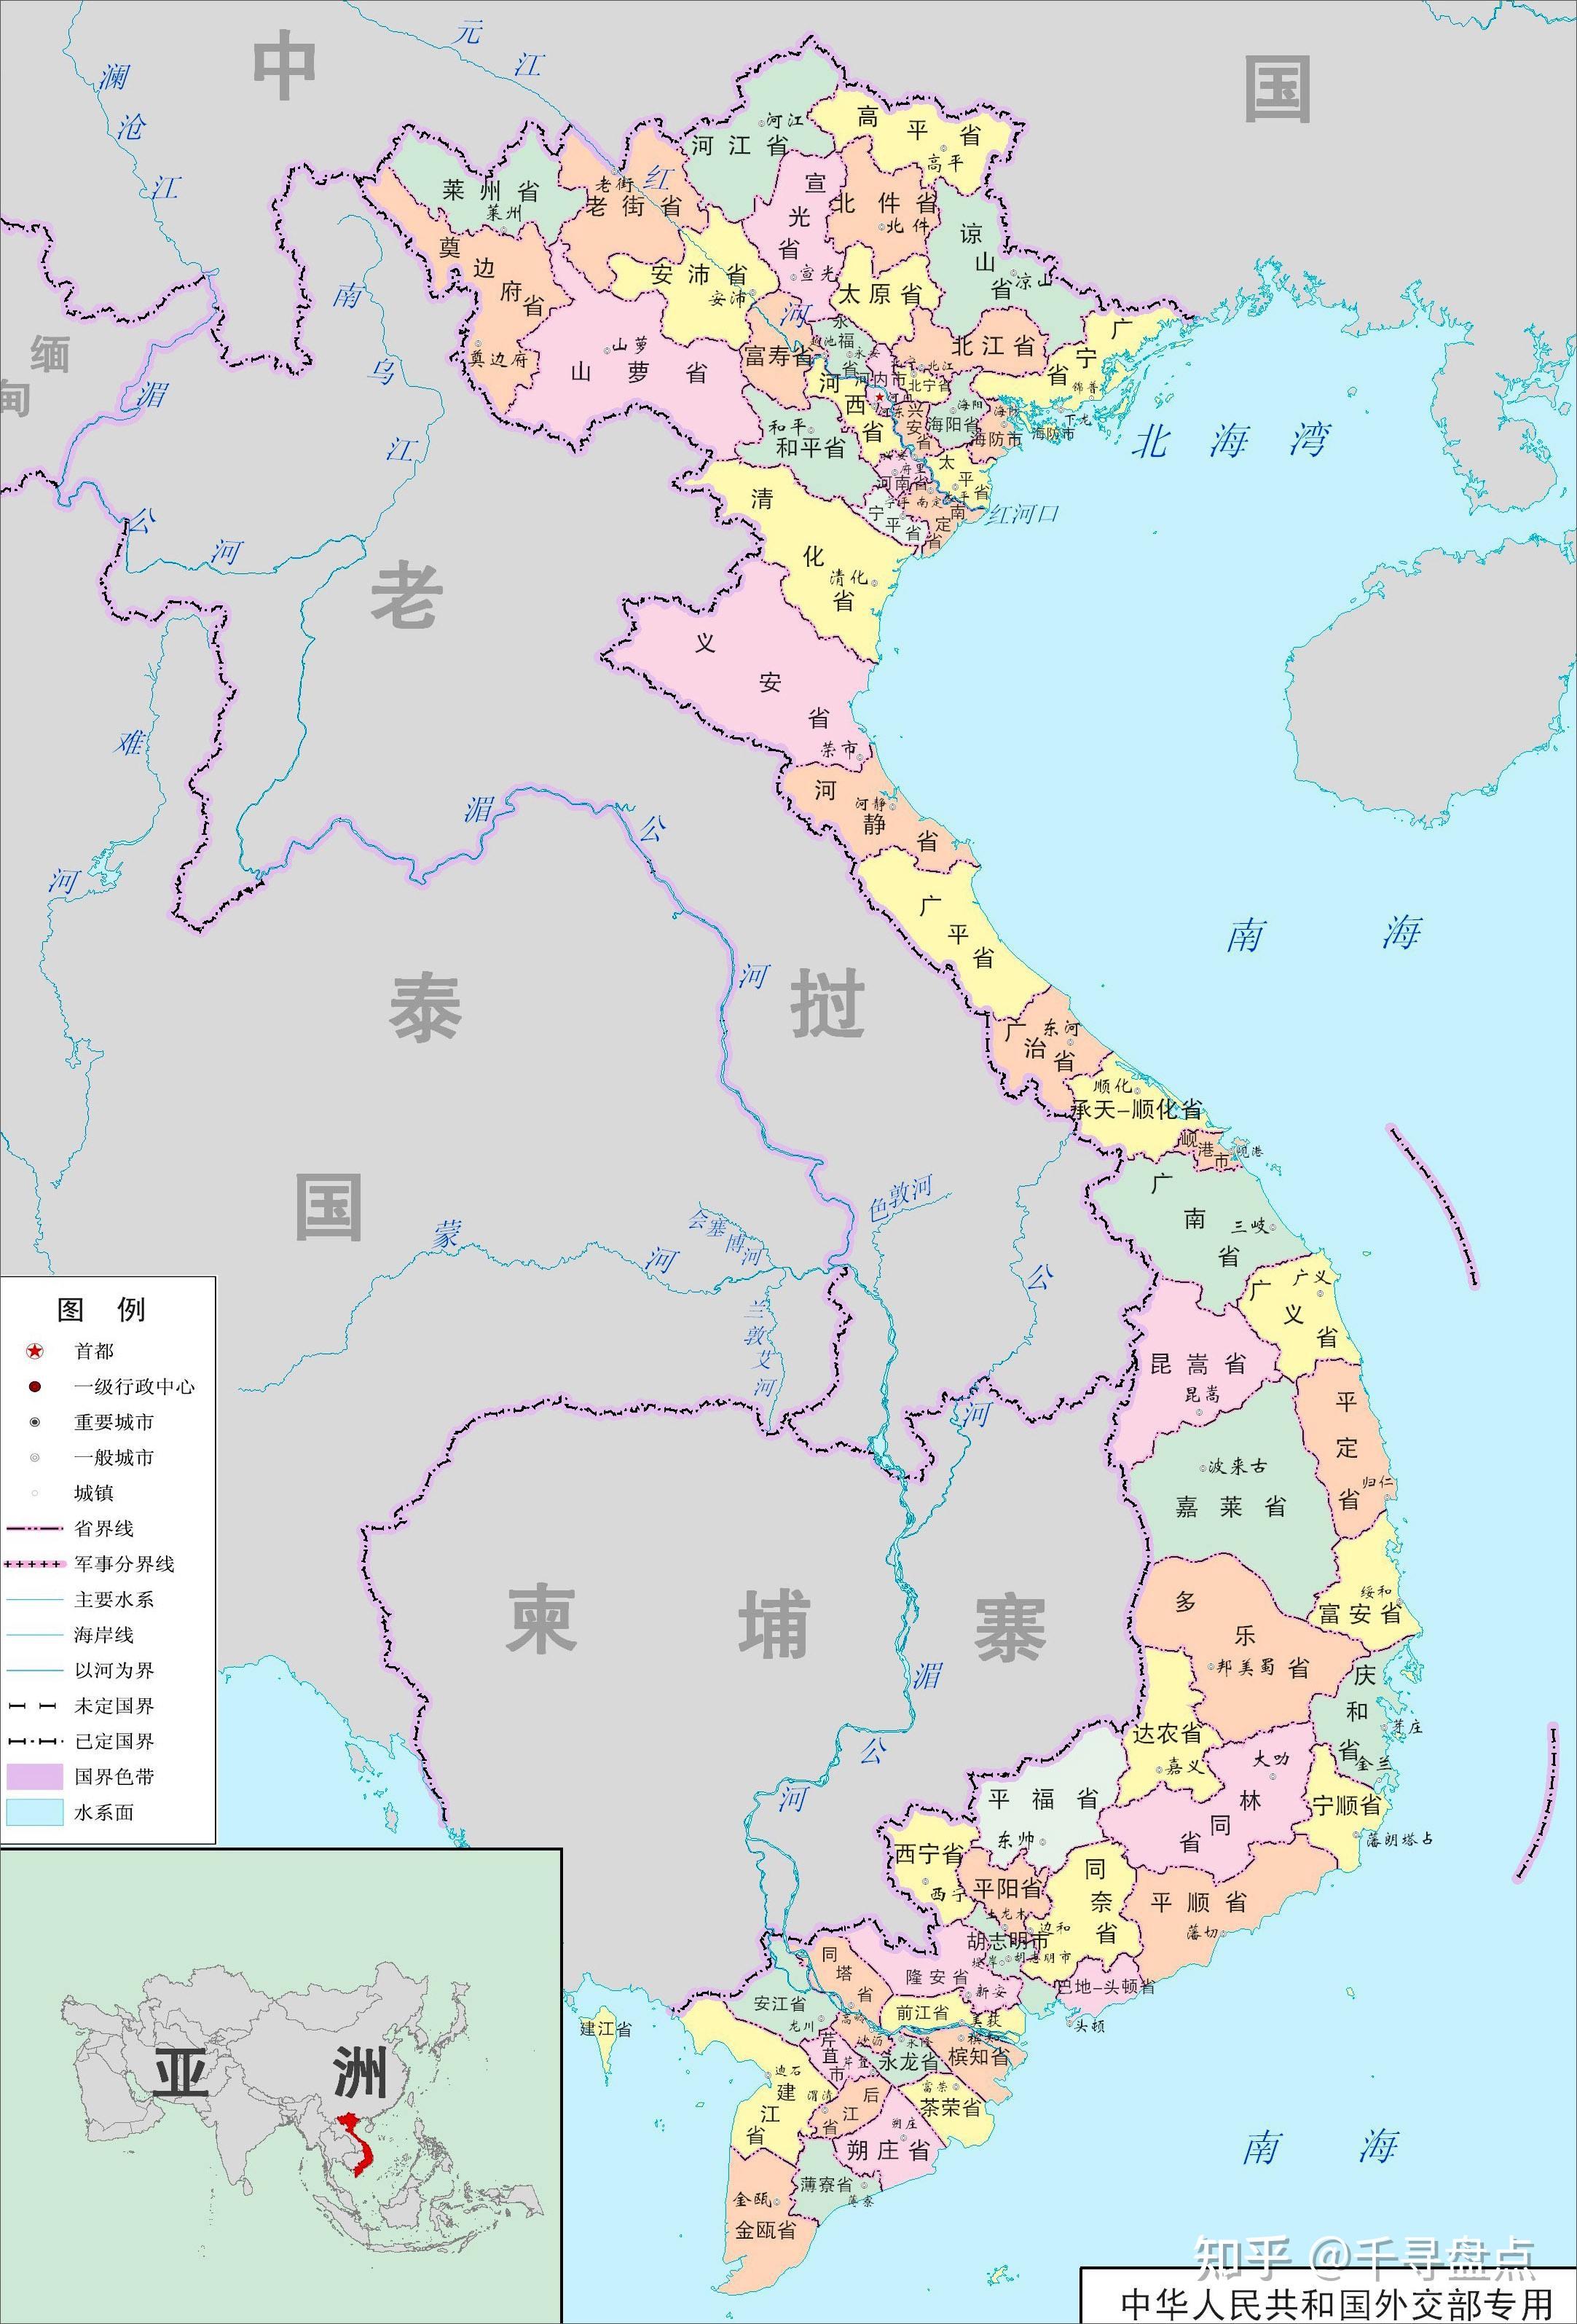 【2021年越南各省市人均月收入排行榜】最高的省超过700万越南盾 - 知乎